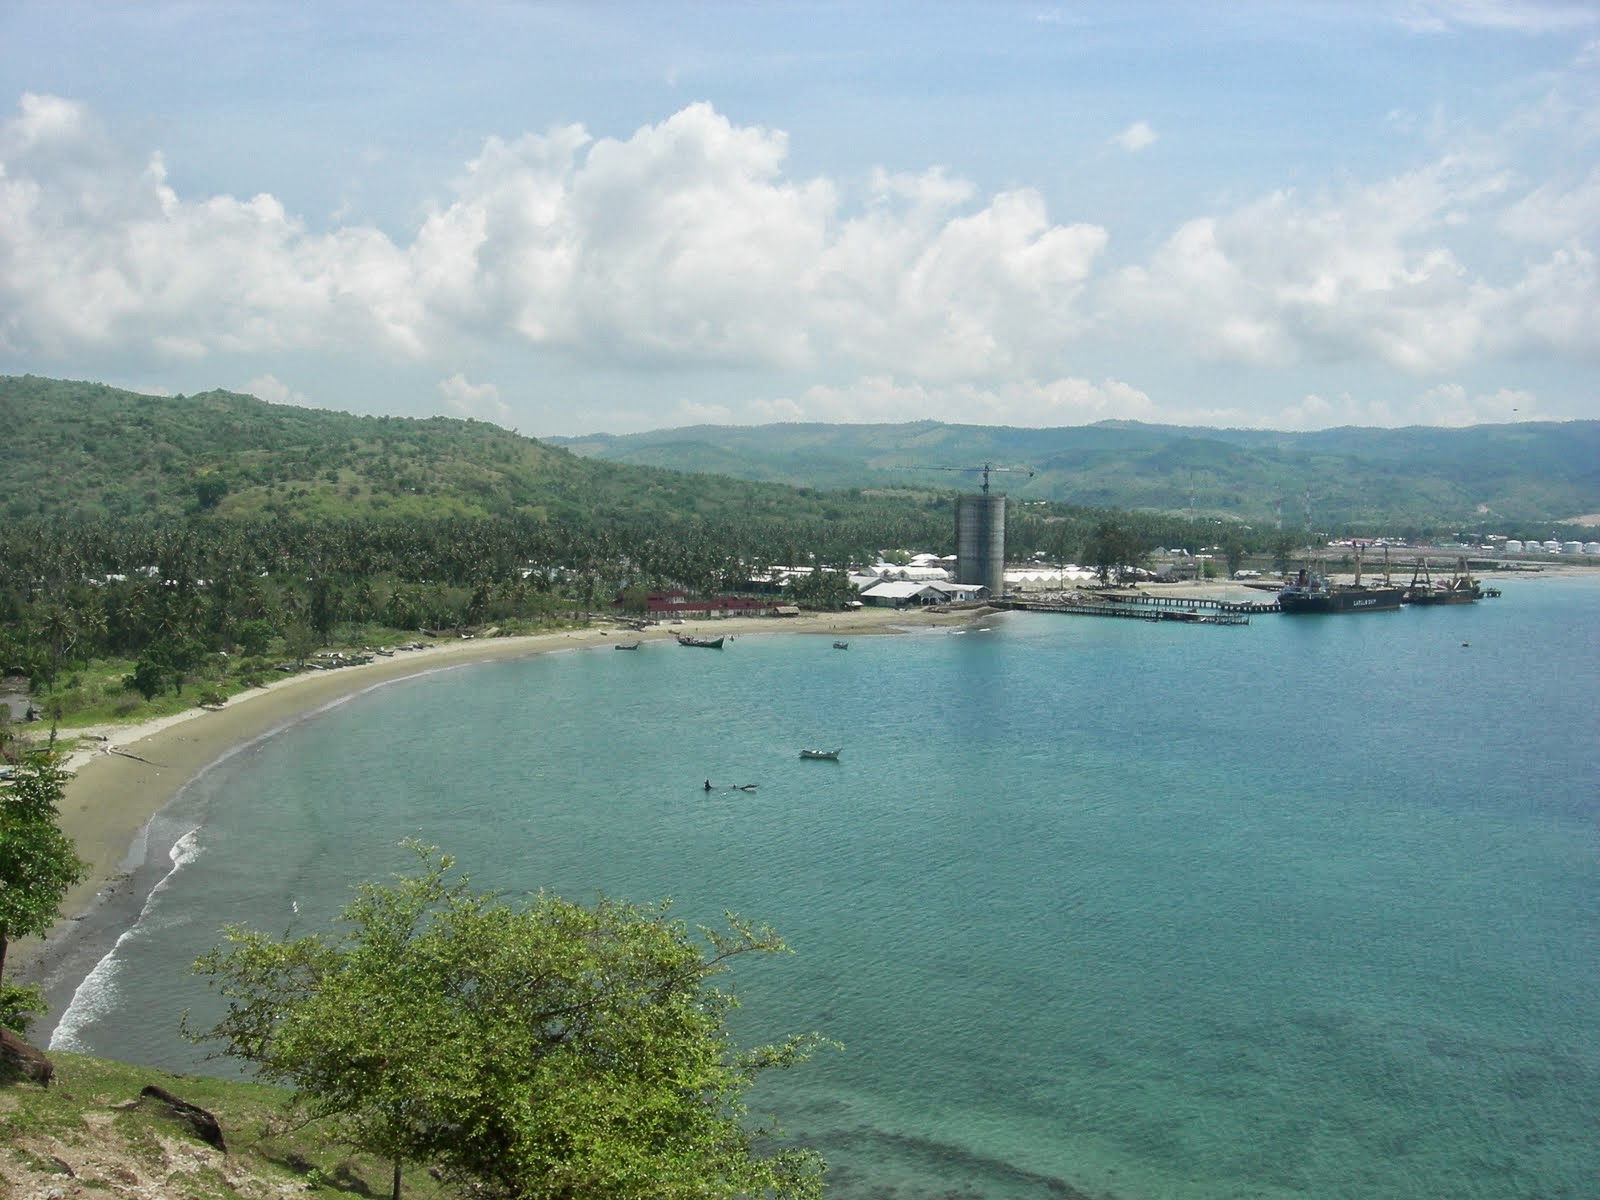 250 Tempat Wisata di Aceh Paling Menarik dan Wajib Dikunjungi - Tempat.me